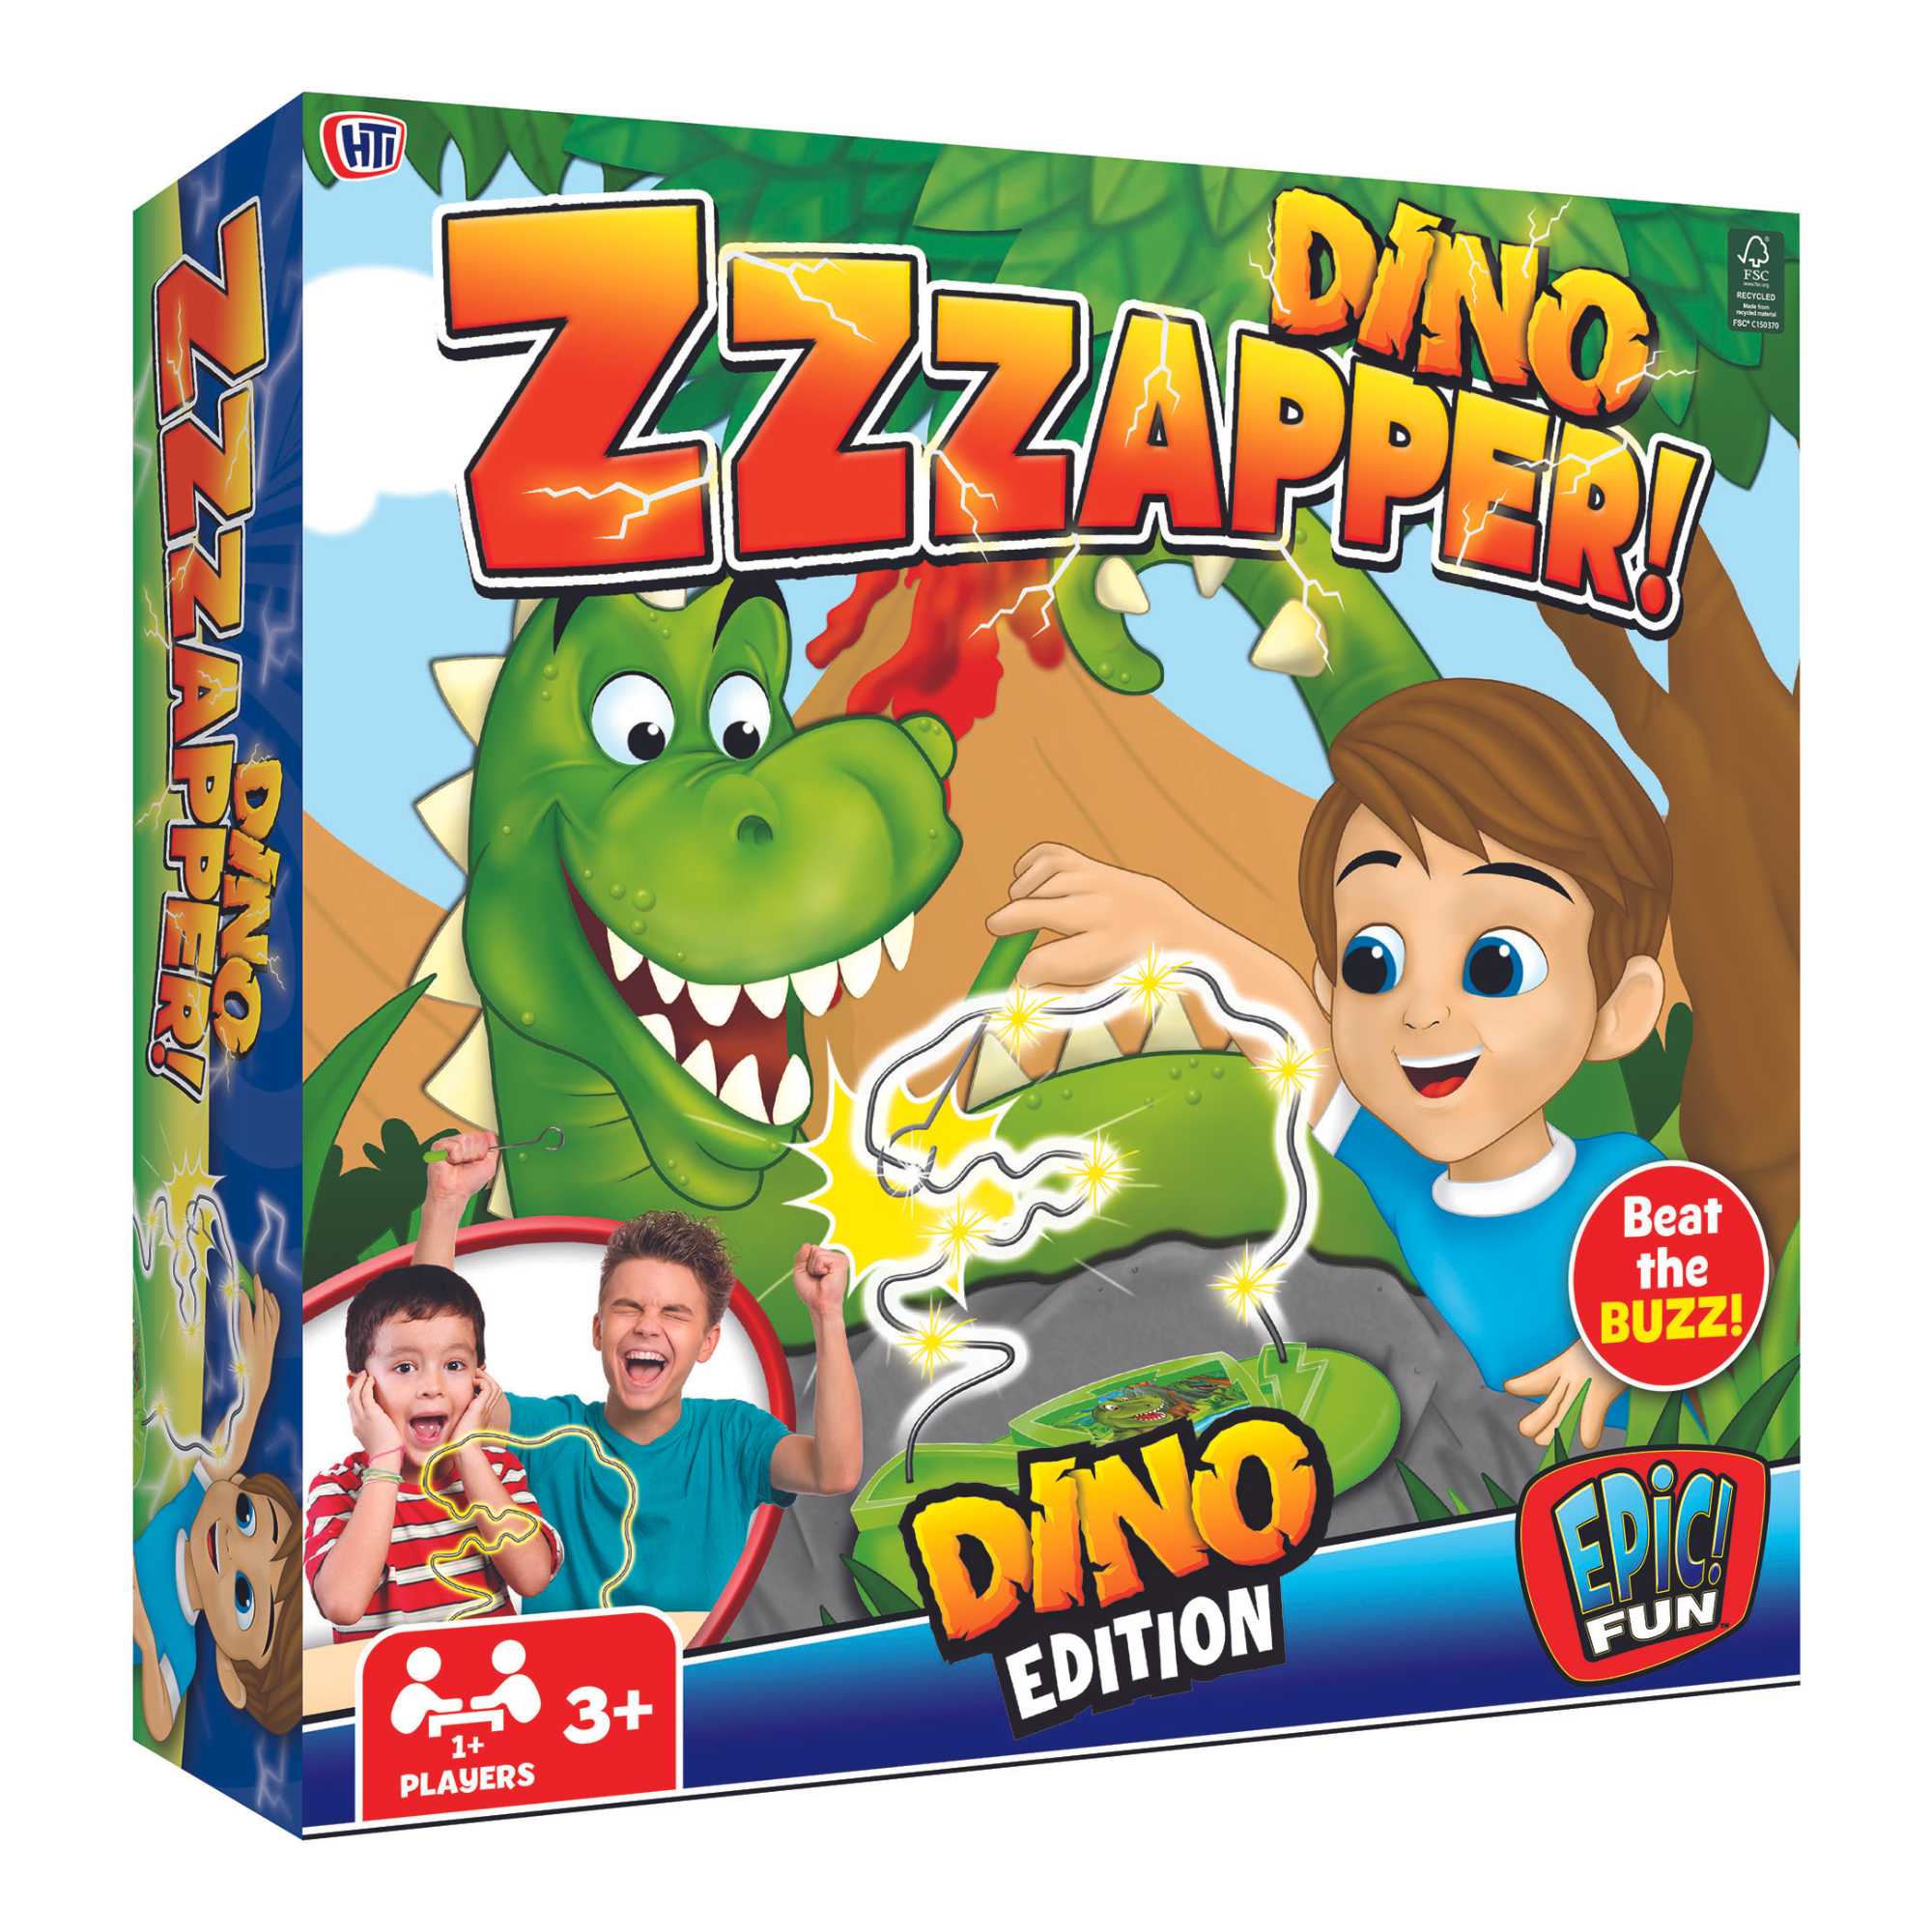 Epic Fun Dino Zapper Dinosaur Board Game